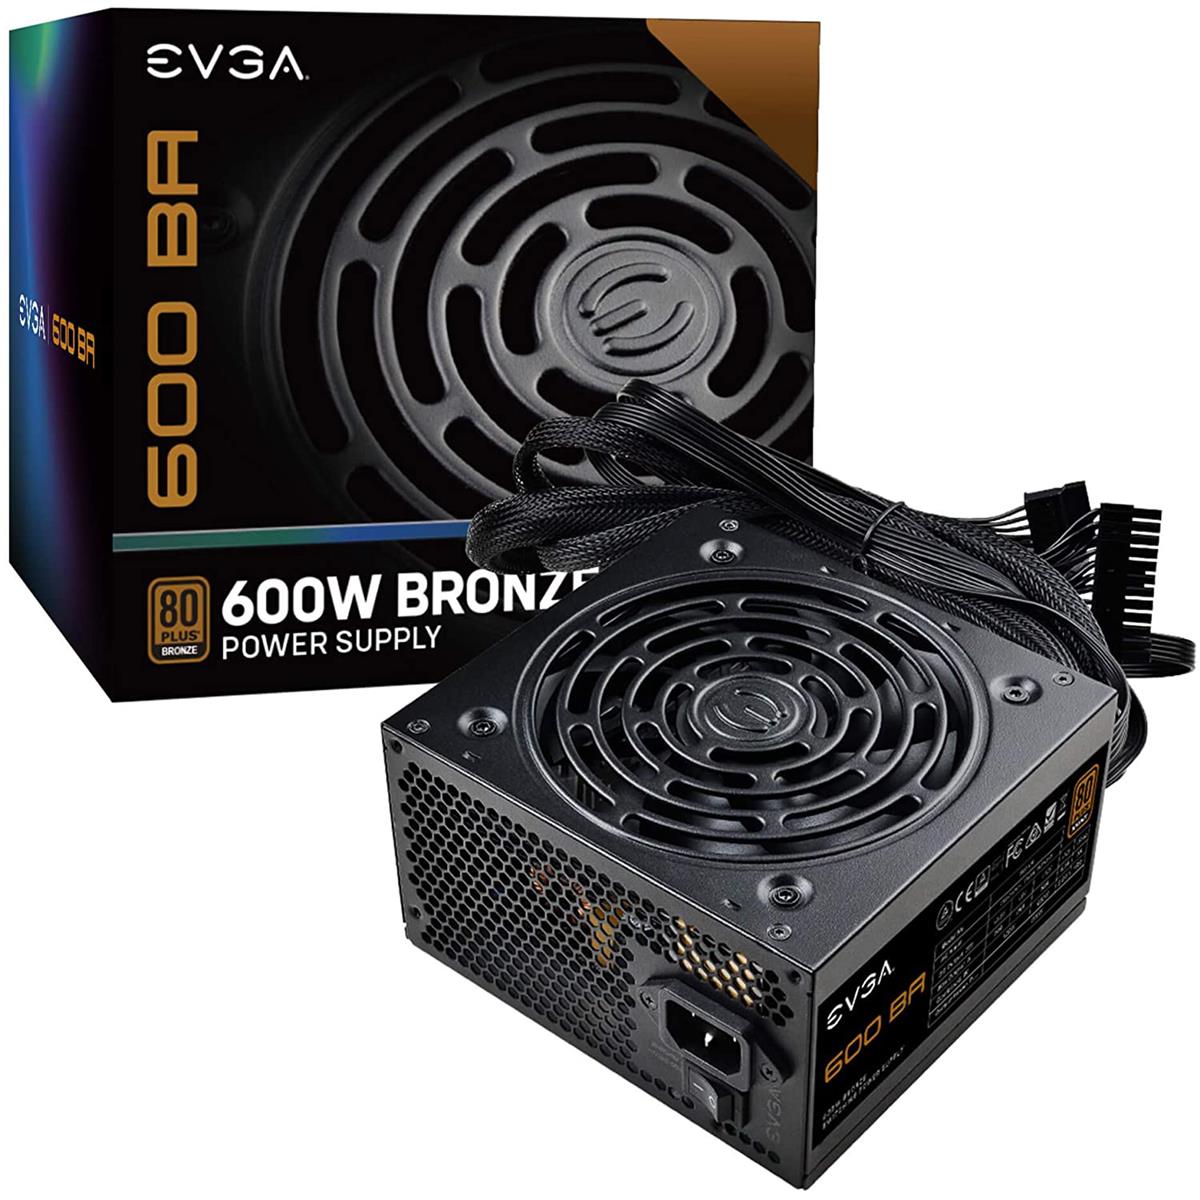 

EVGA 600W BA Non-Modular Power Supply, 80 Plus Bronze Efficiency